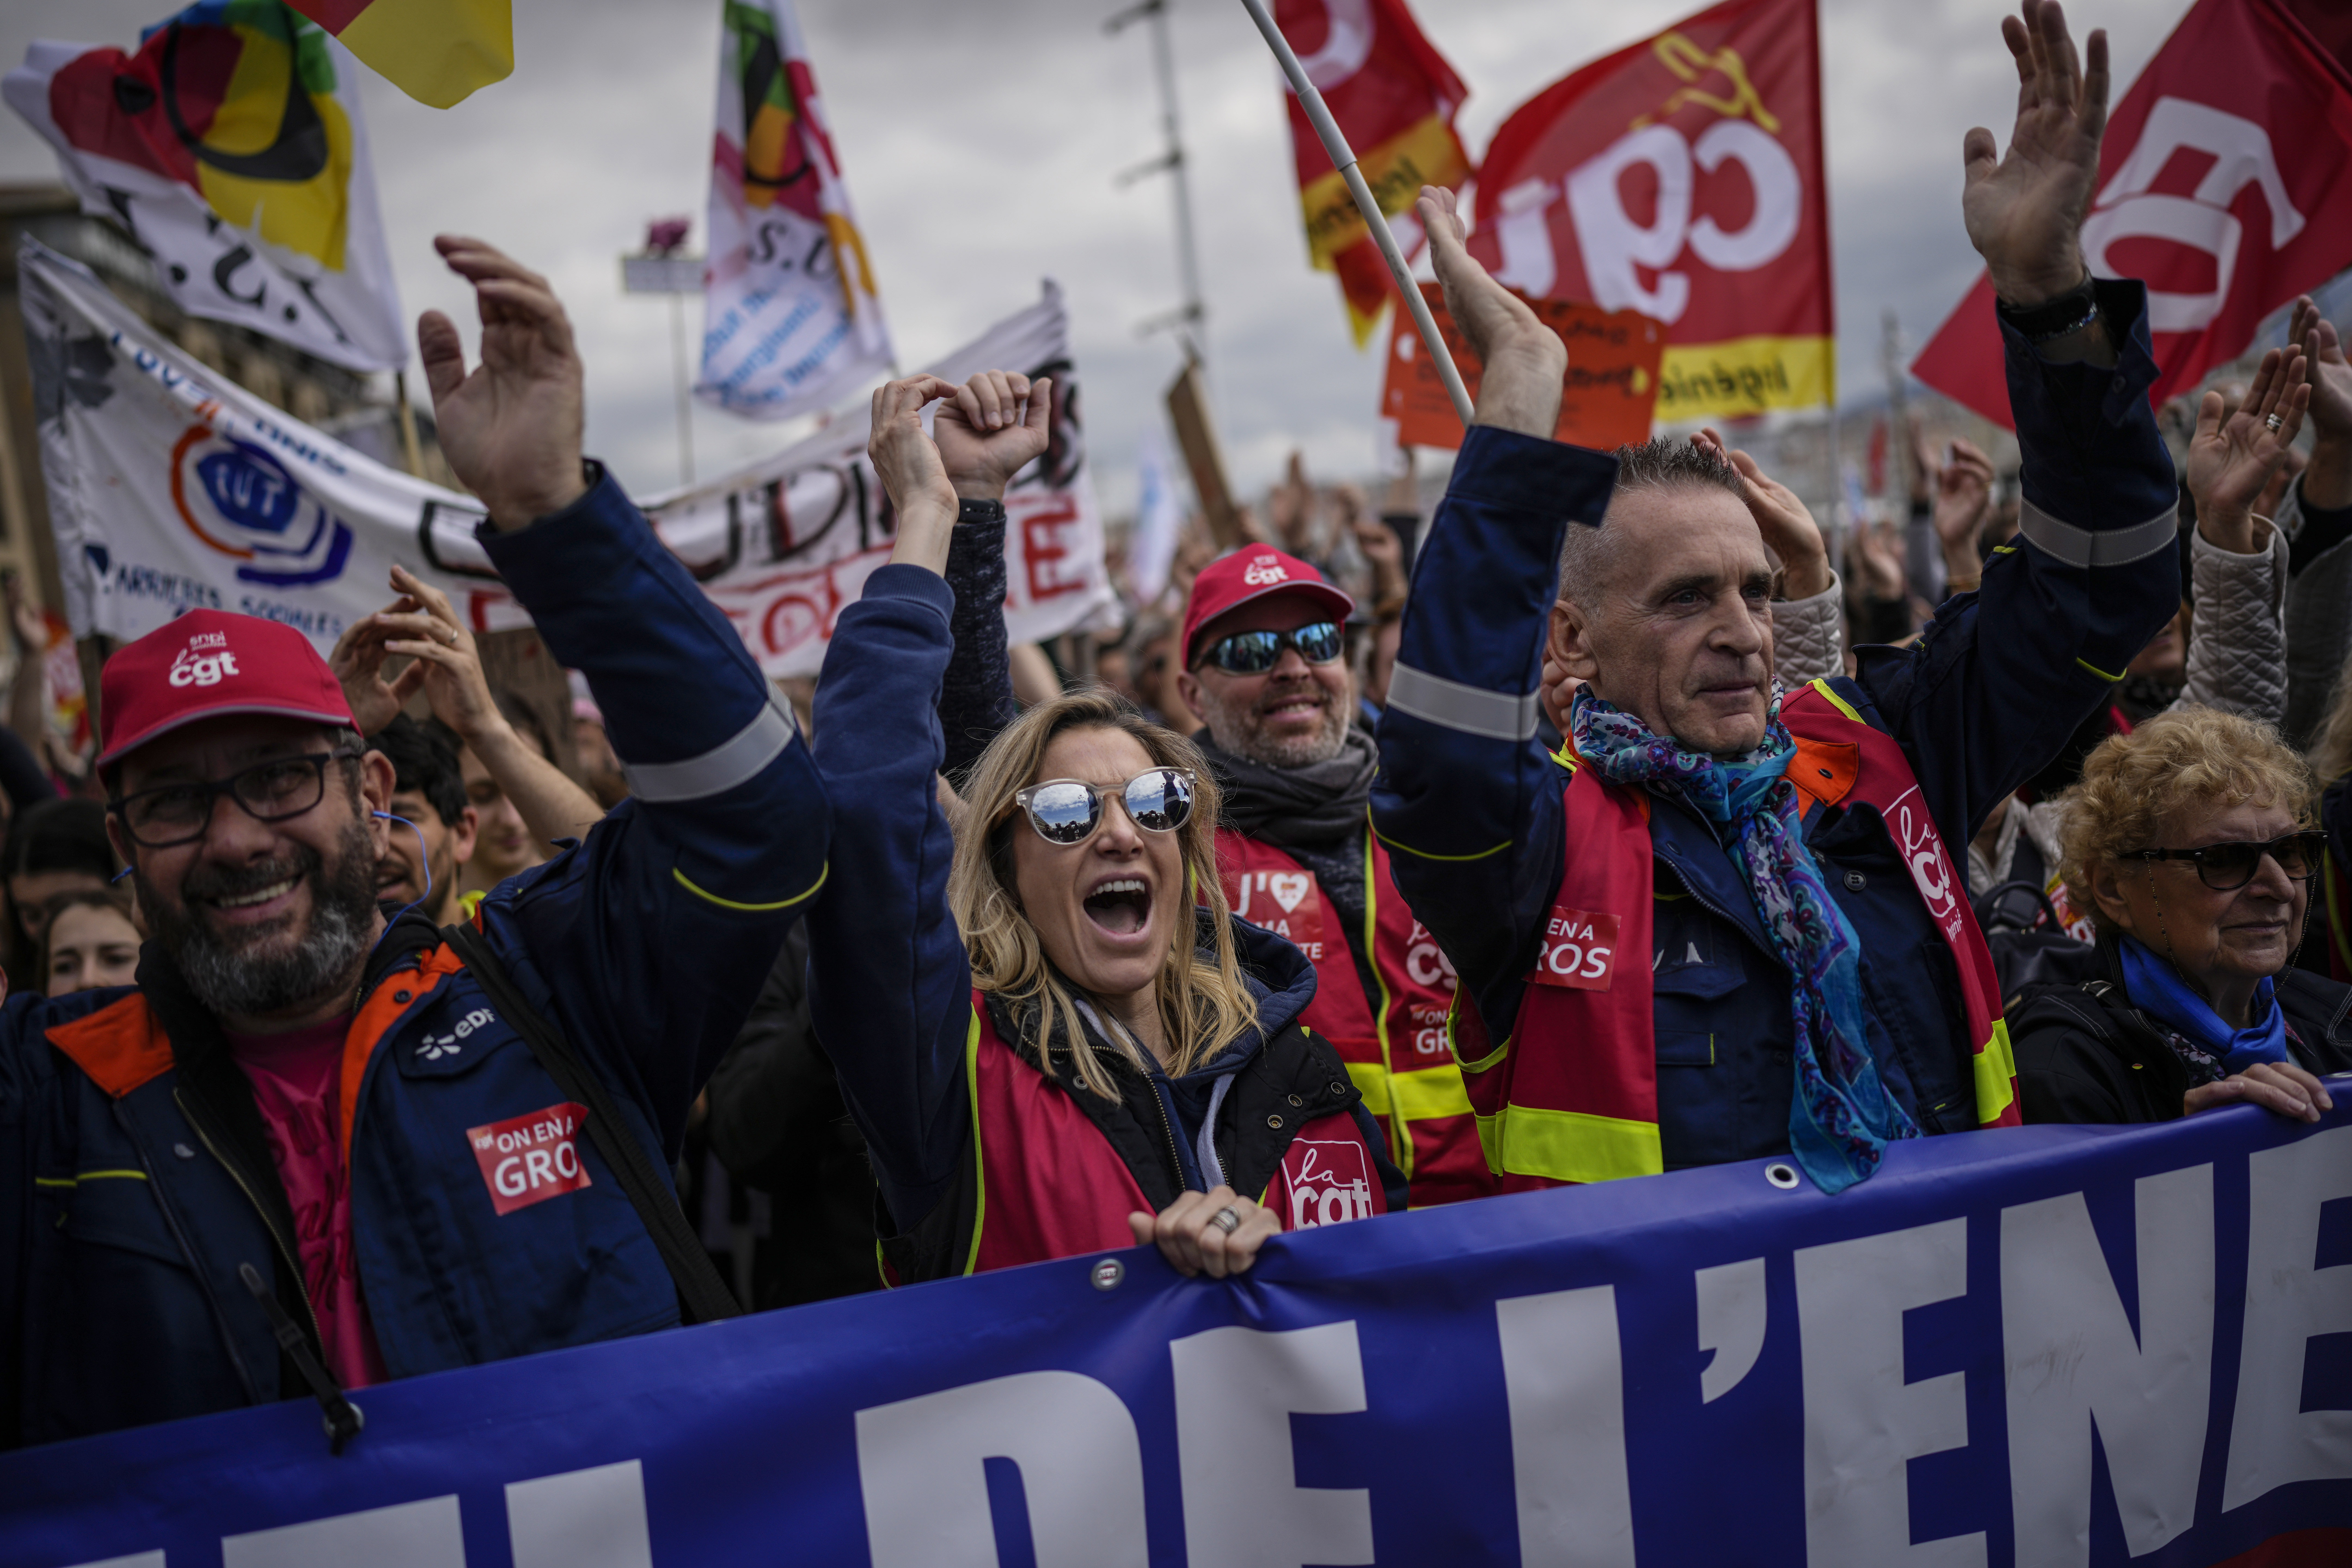 Tras otra violenta jornada de protestas, los sindicatos franceses convocan a más manifestaciones la próxima semana (AP)